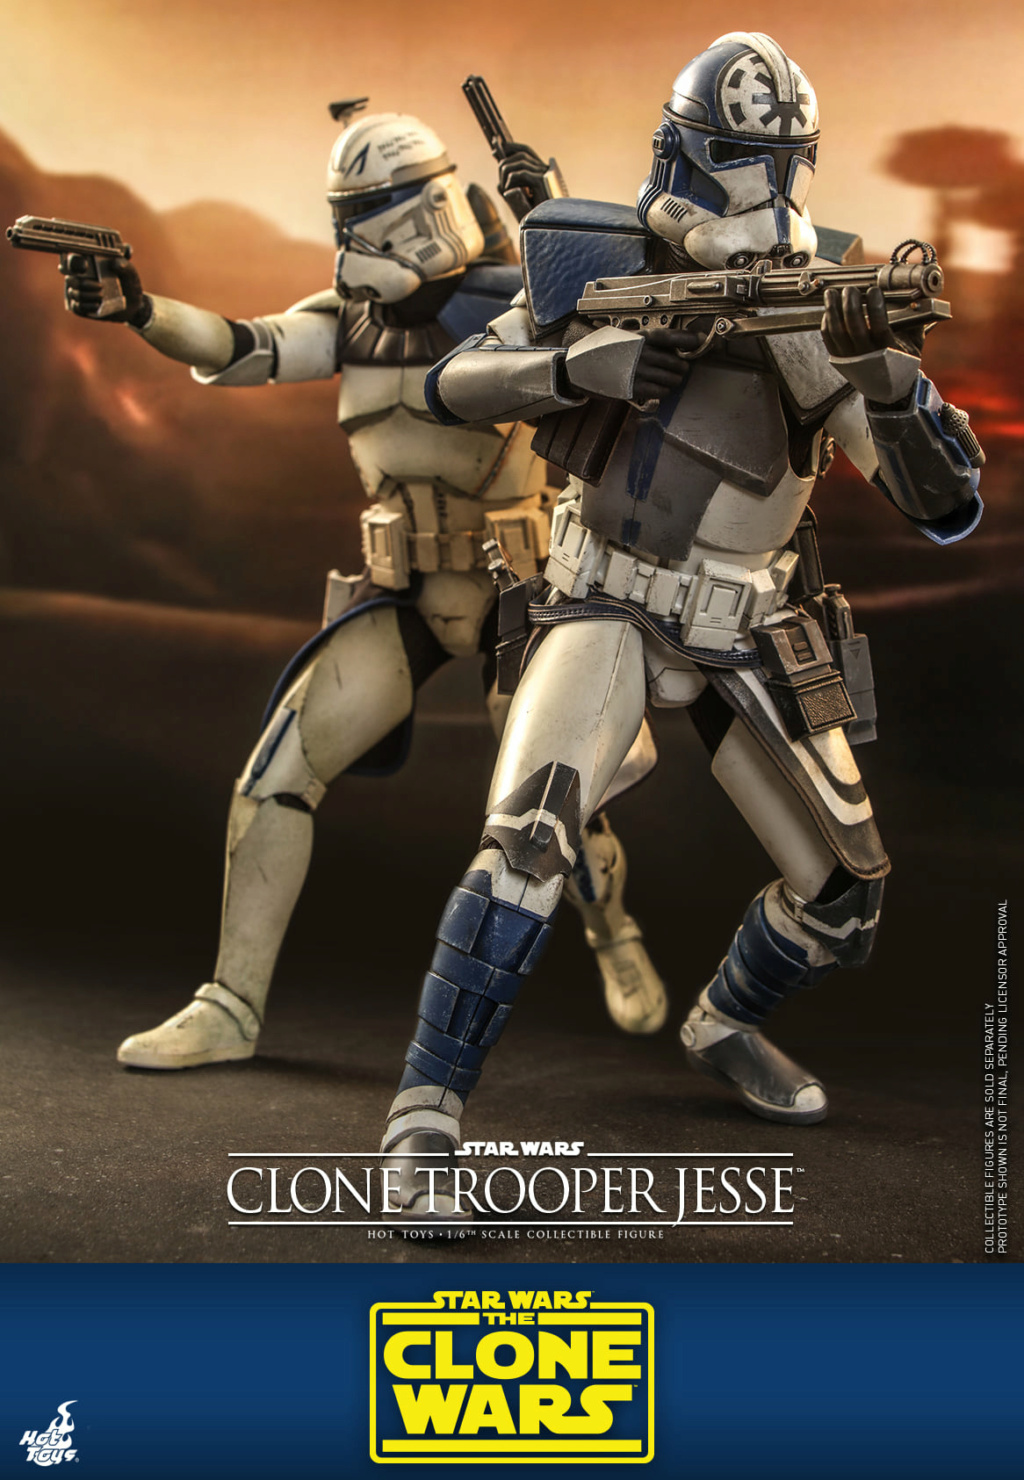 Clone Trooper Jesse - Star Wars: The Clone Wars - Hot Toys Clone_33